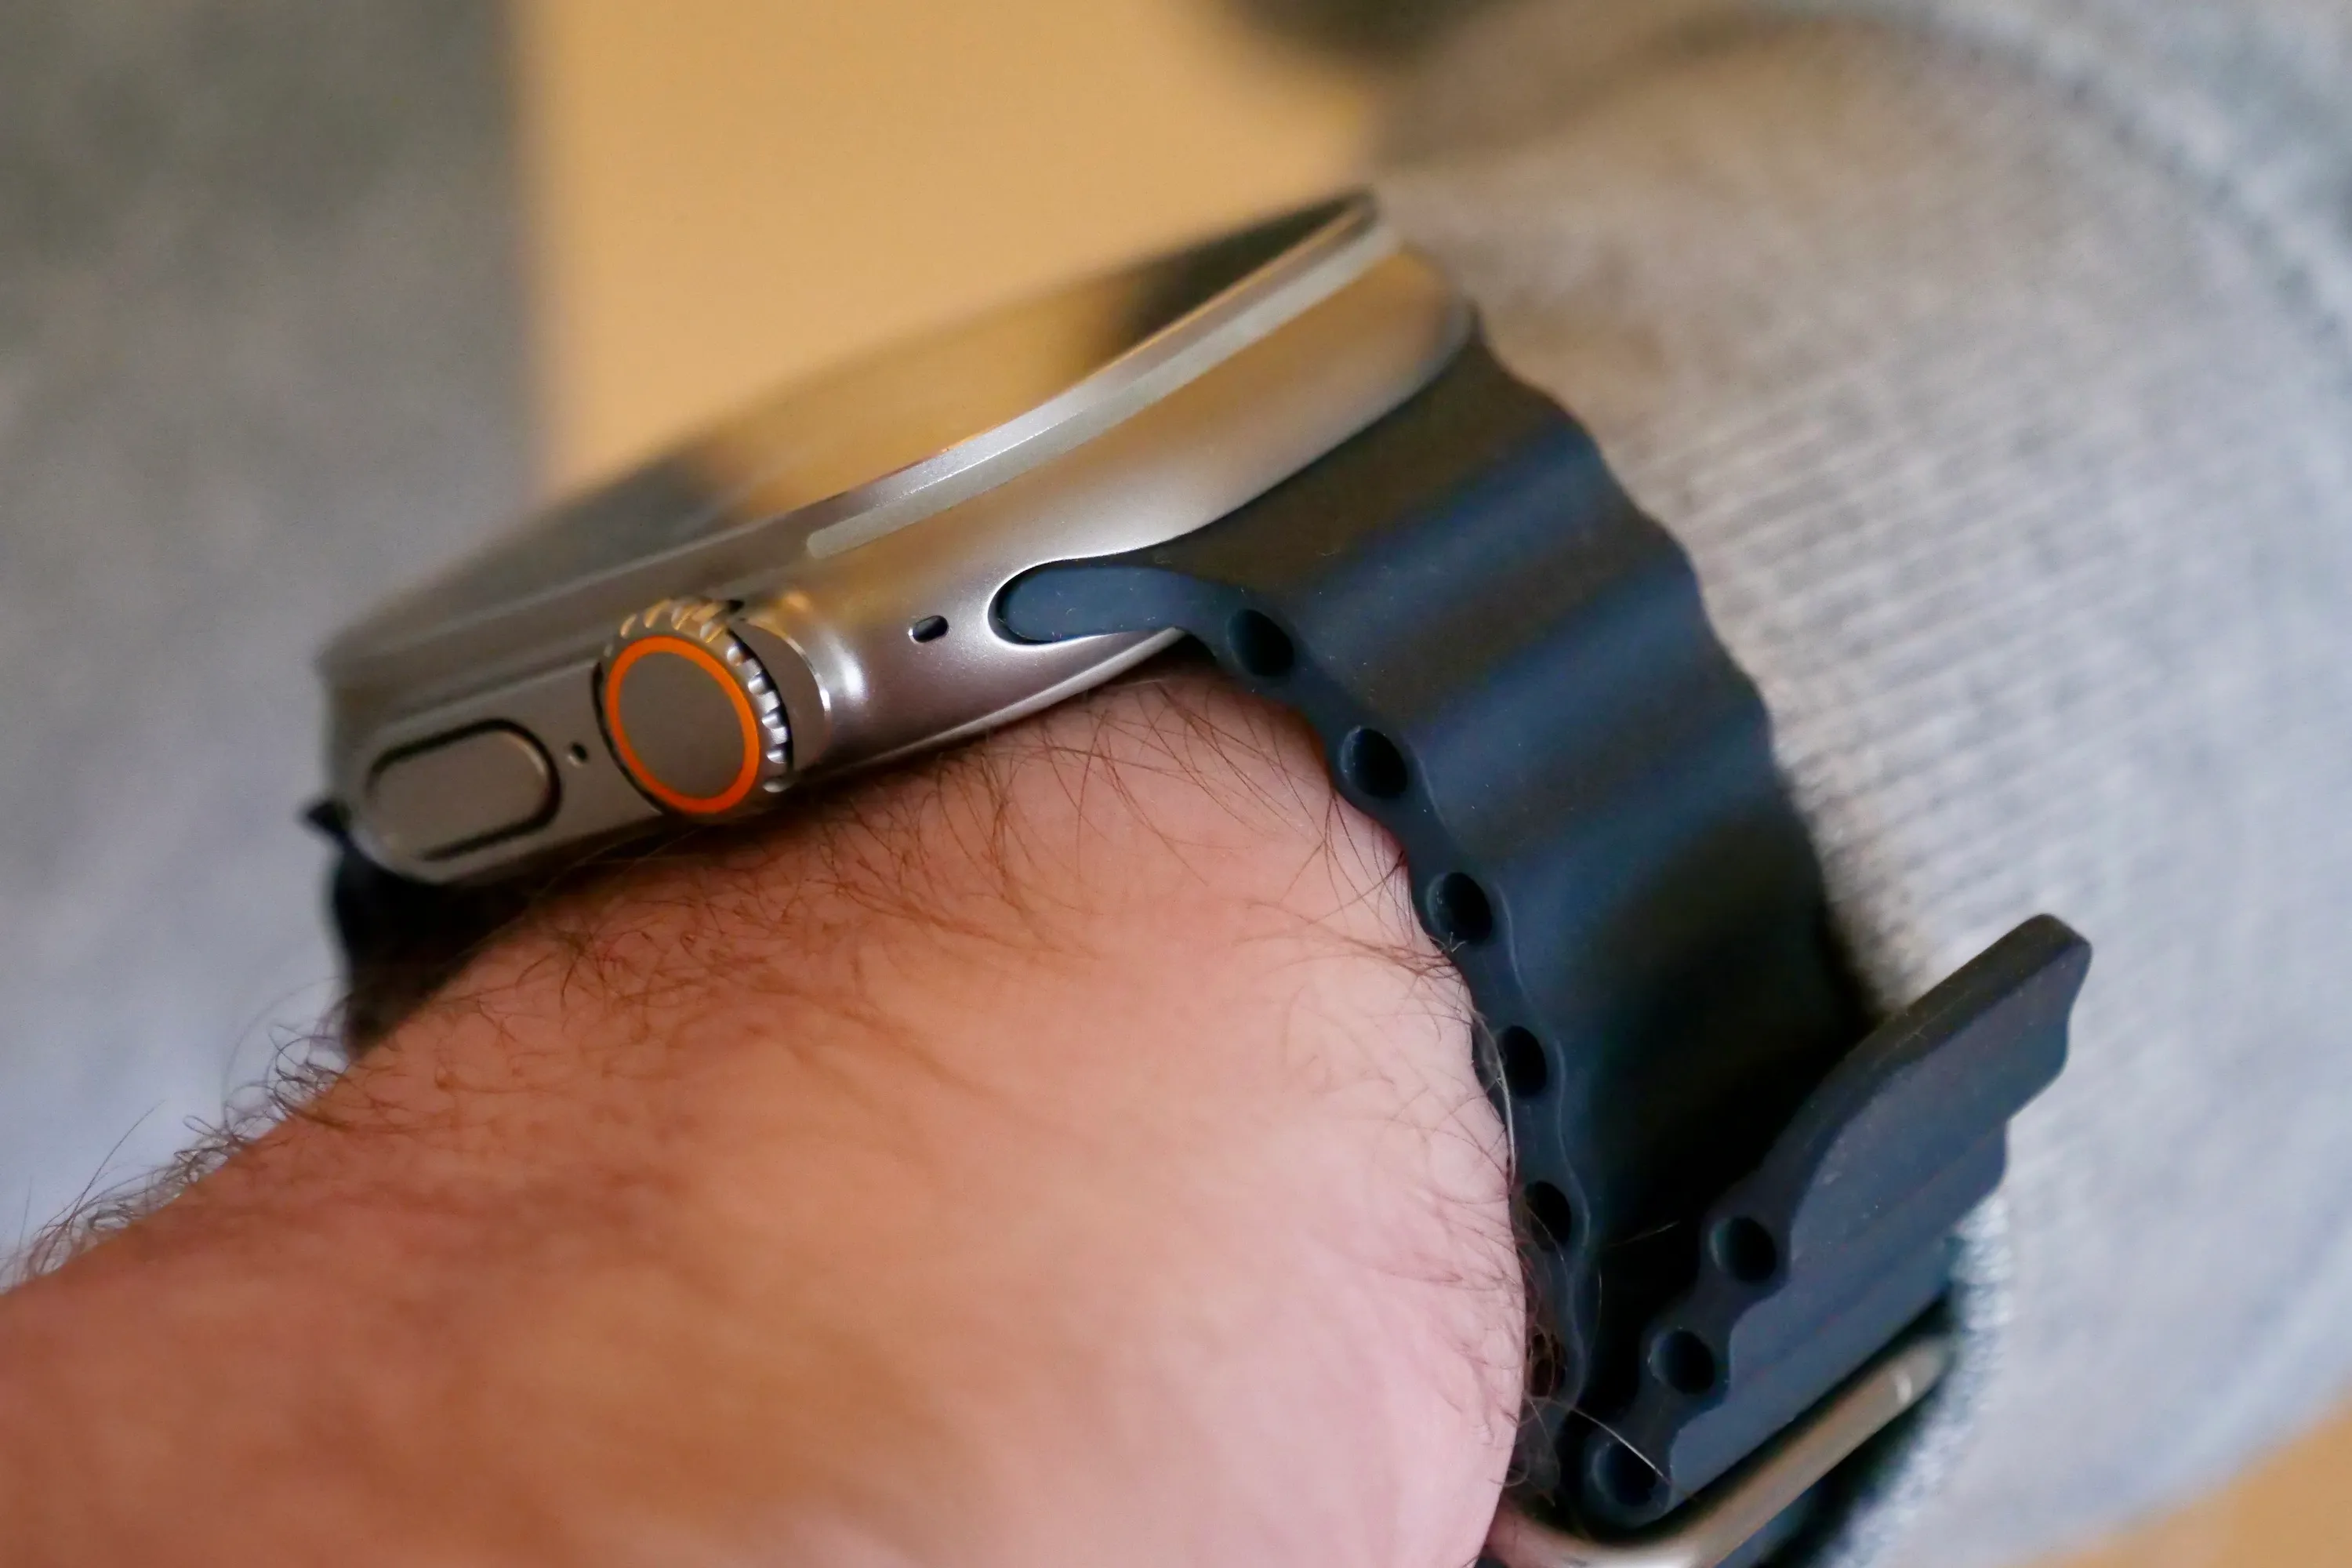 Il lato dell'Apple Watch Ultra con il braccialetto Ocean Band.